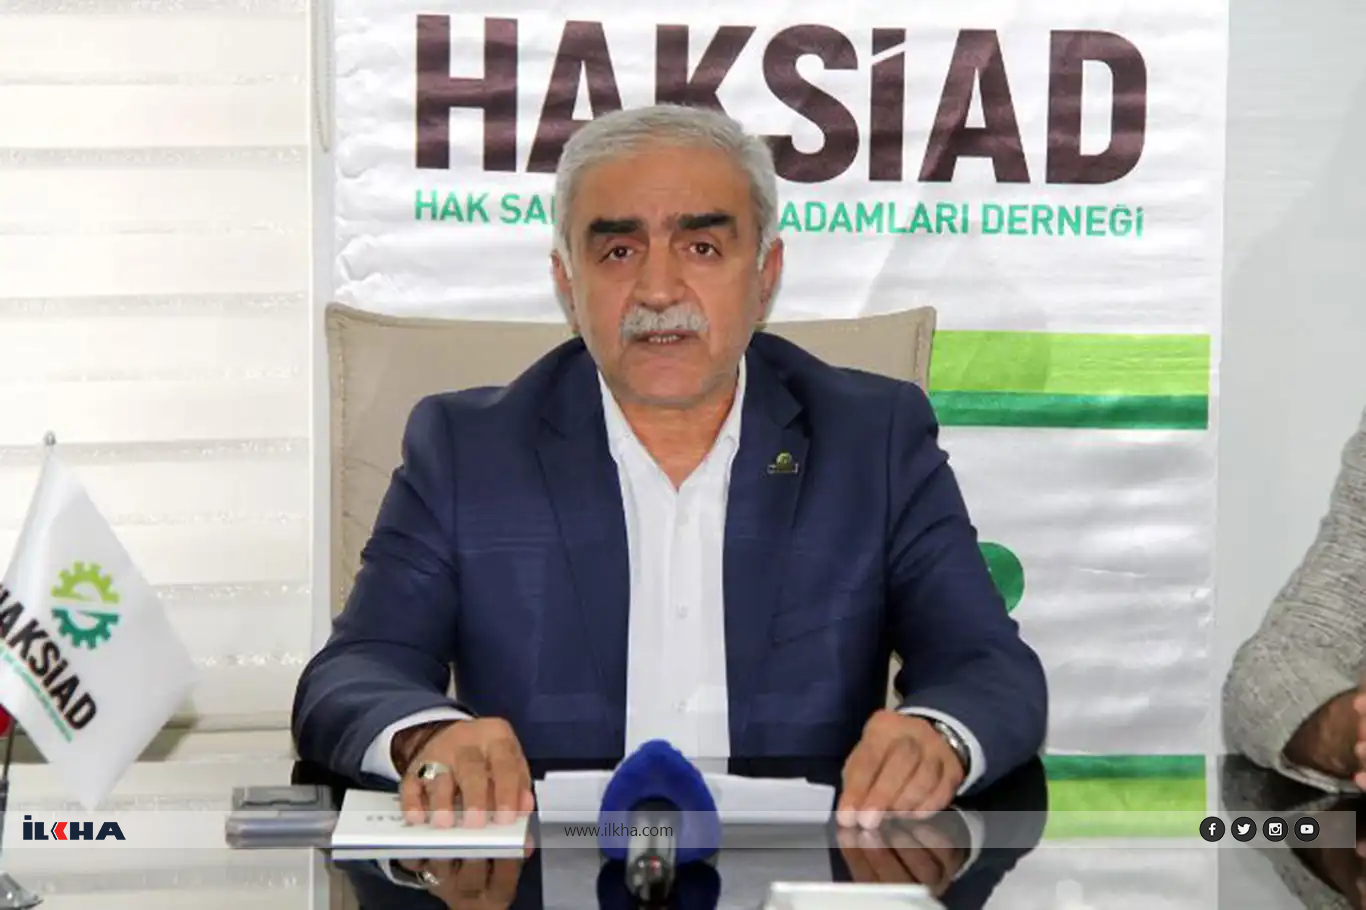 HAKSİAD Diyarbakır İl Başkanından reel sektör açıklaması